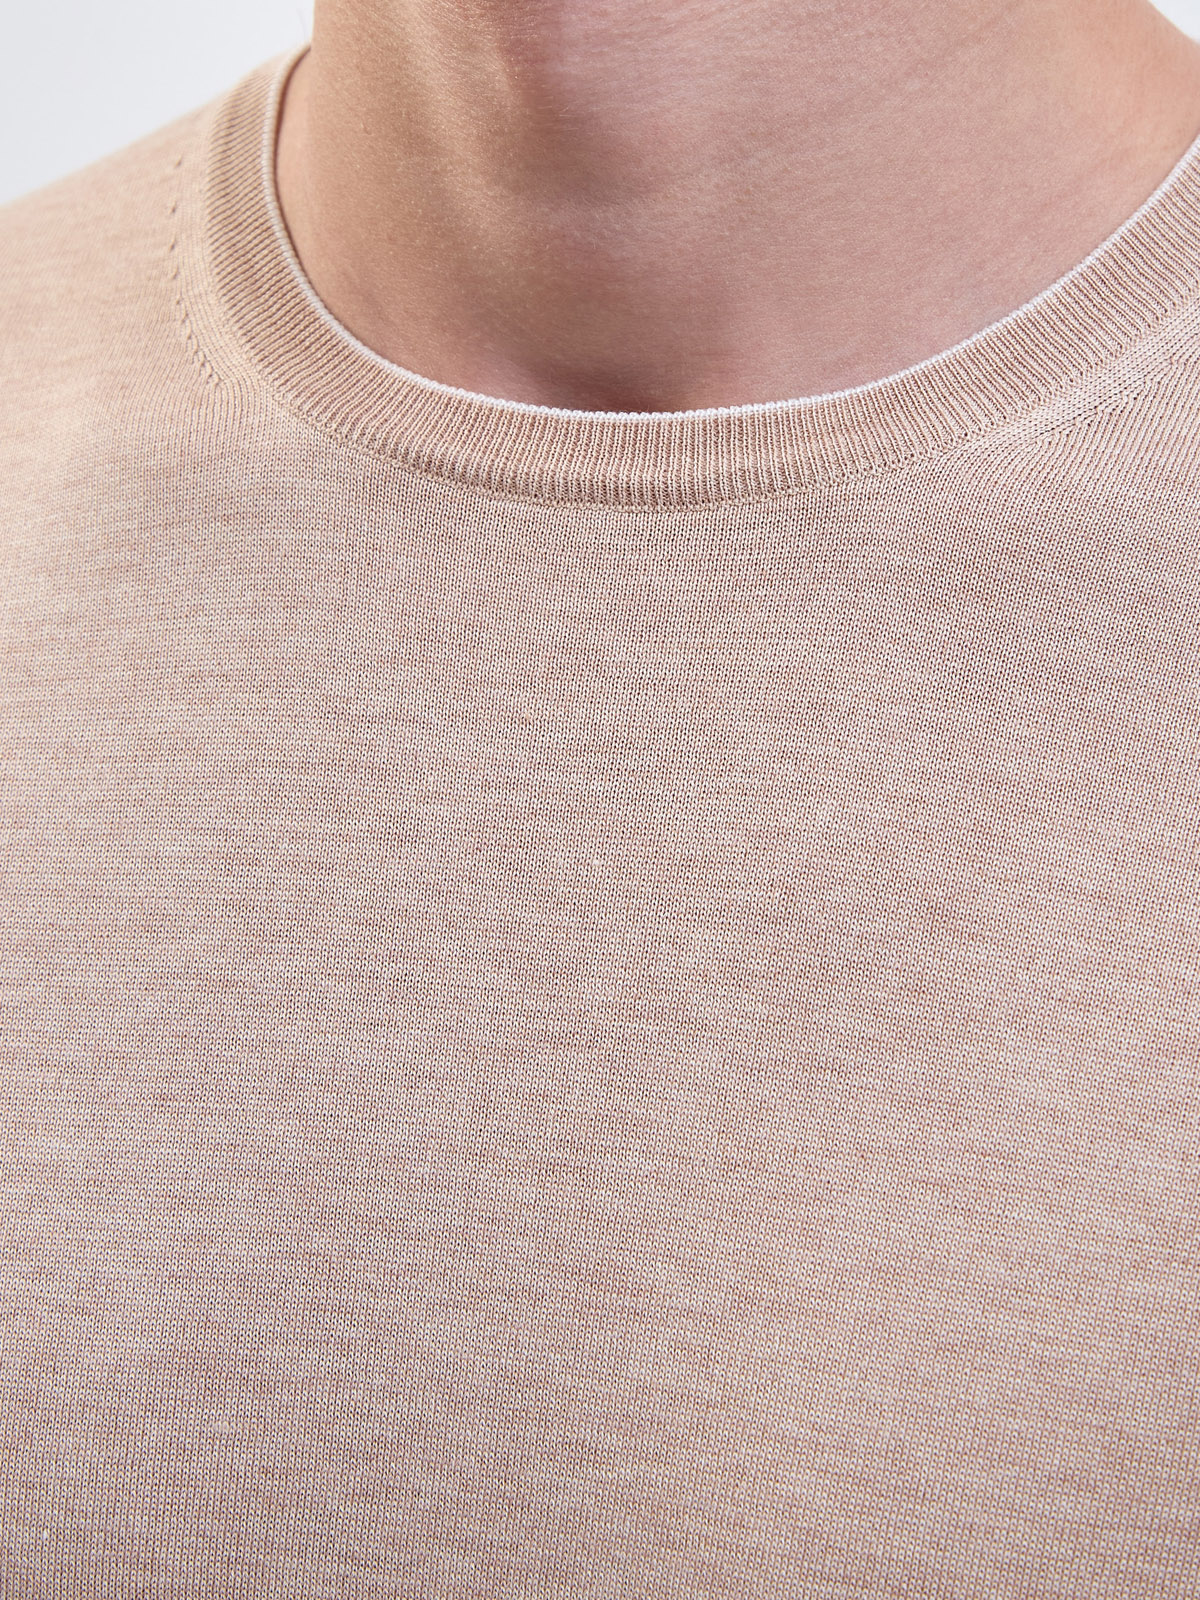 Однотонный джемпер из шелка и хлопка с контрастным кантом GRAN SASSO, цвет бежевый, размер 48;52;54 - фото 5